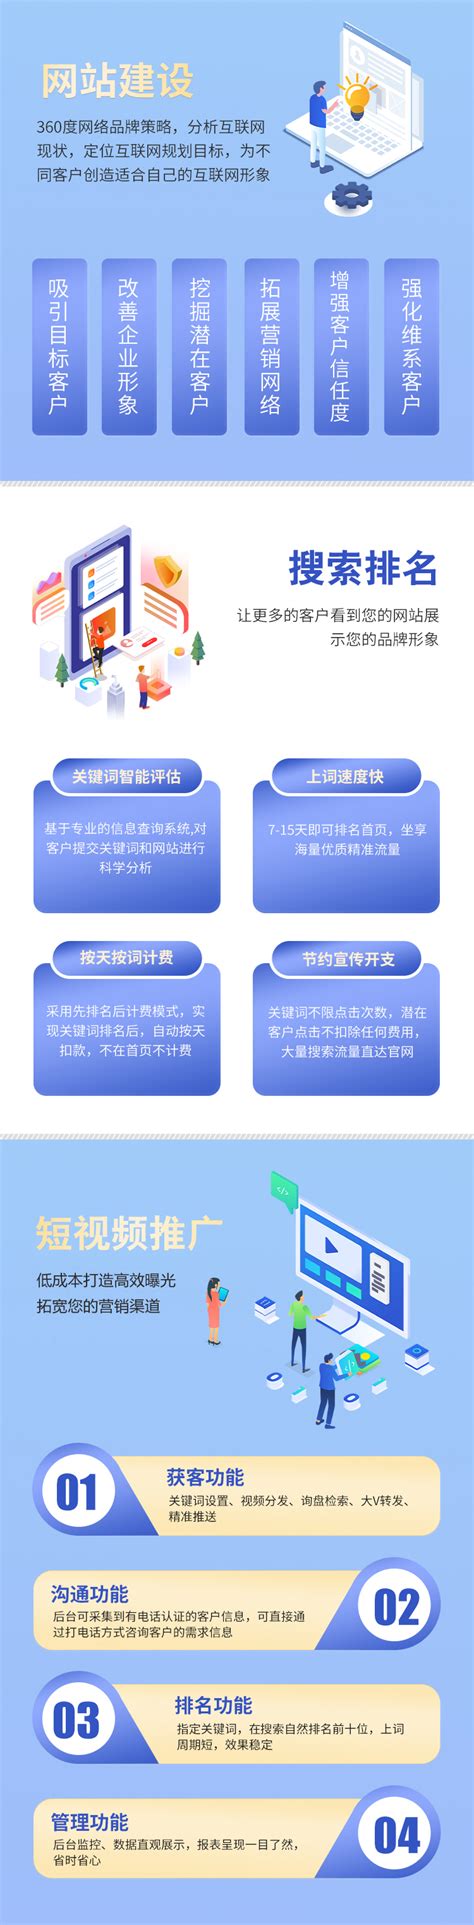 重庆网络推广方式